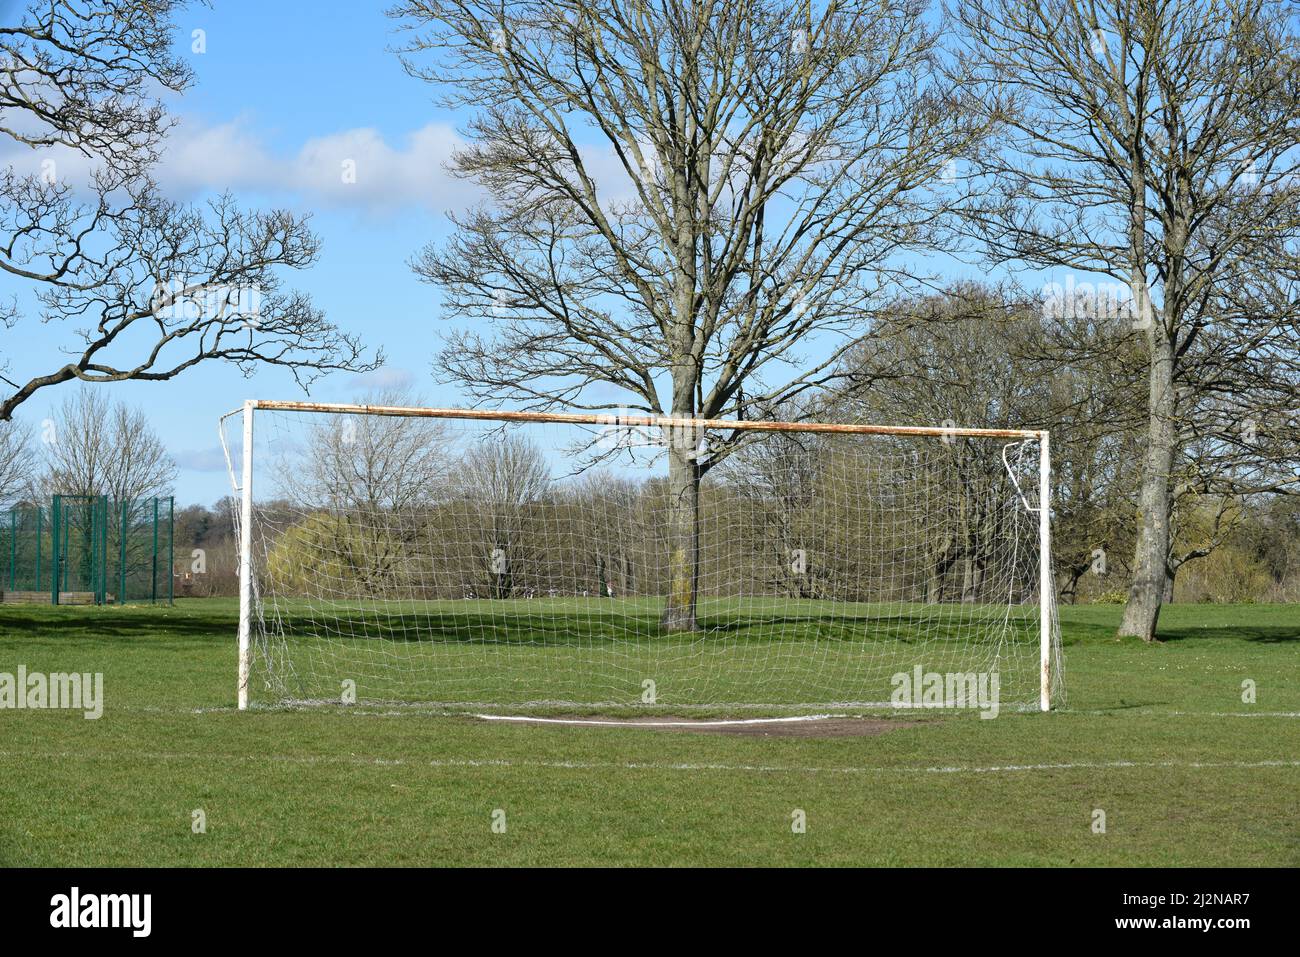 Des buts de football ou de football dans un parc public pour les sports d'équipe Banque D'Images